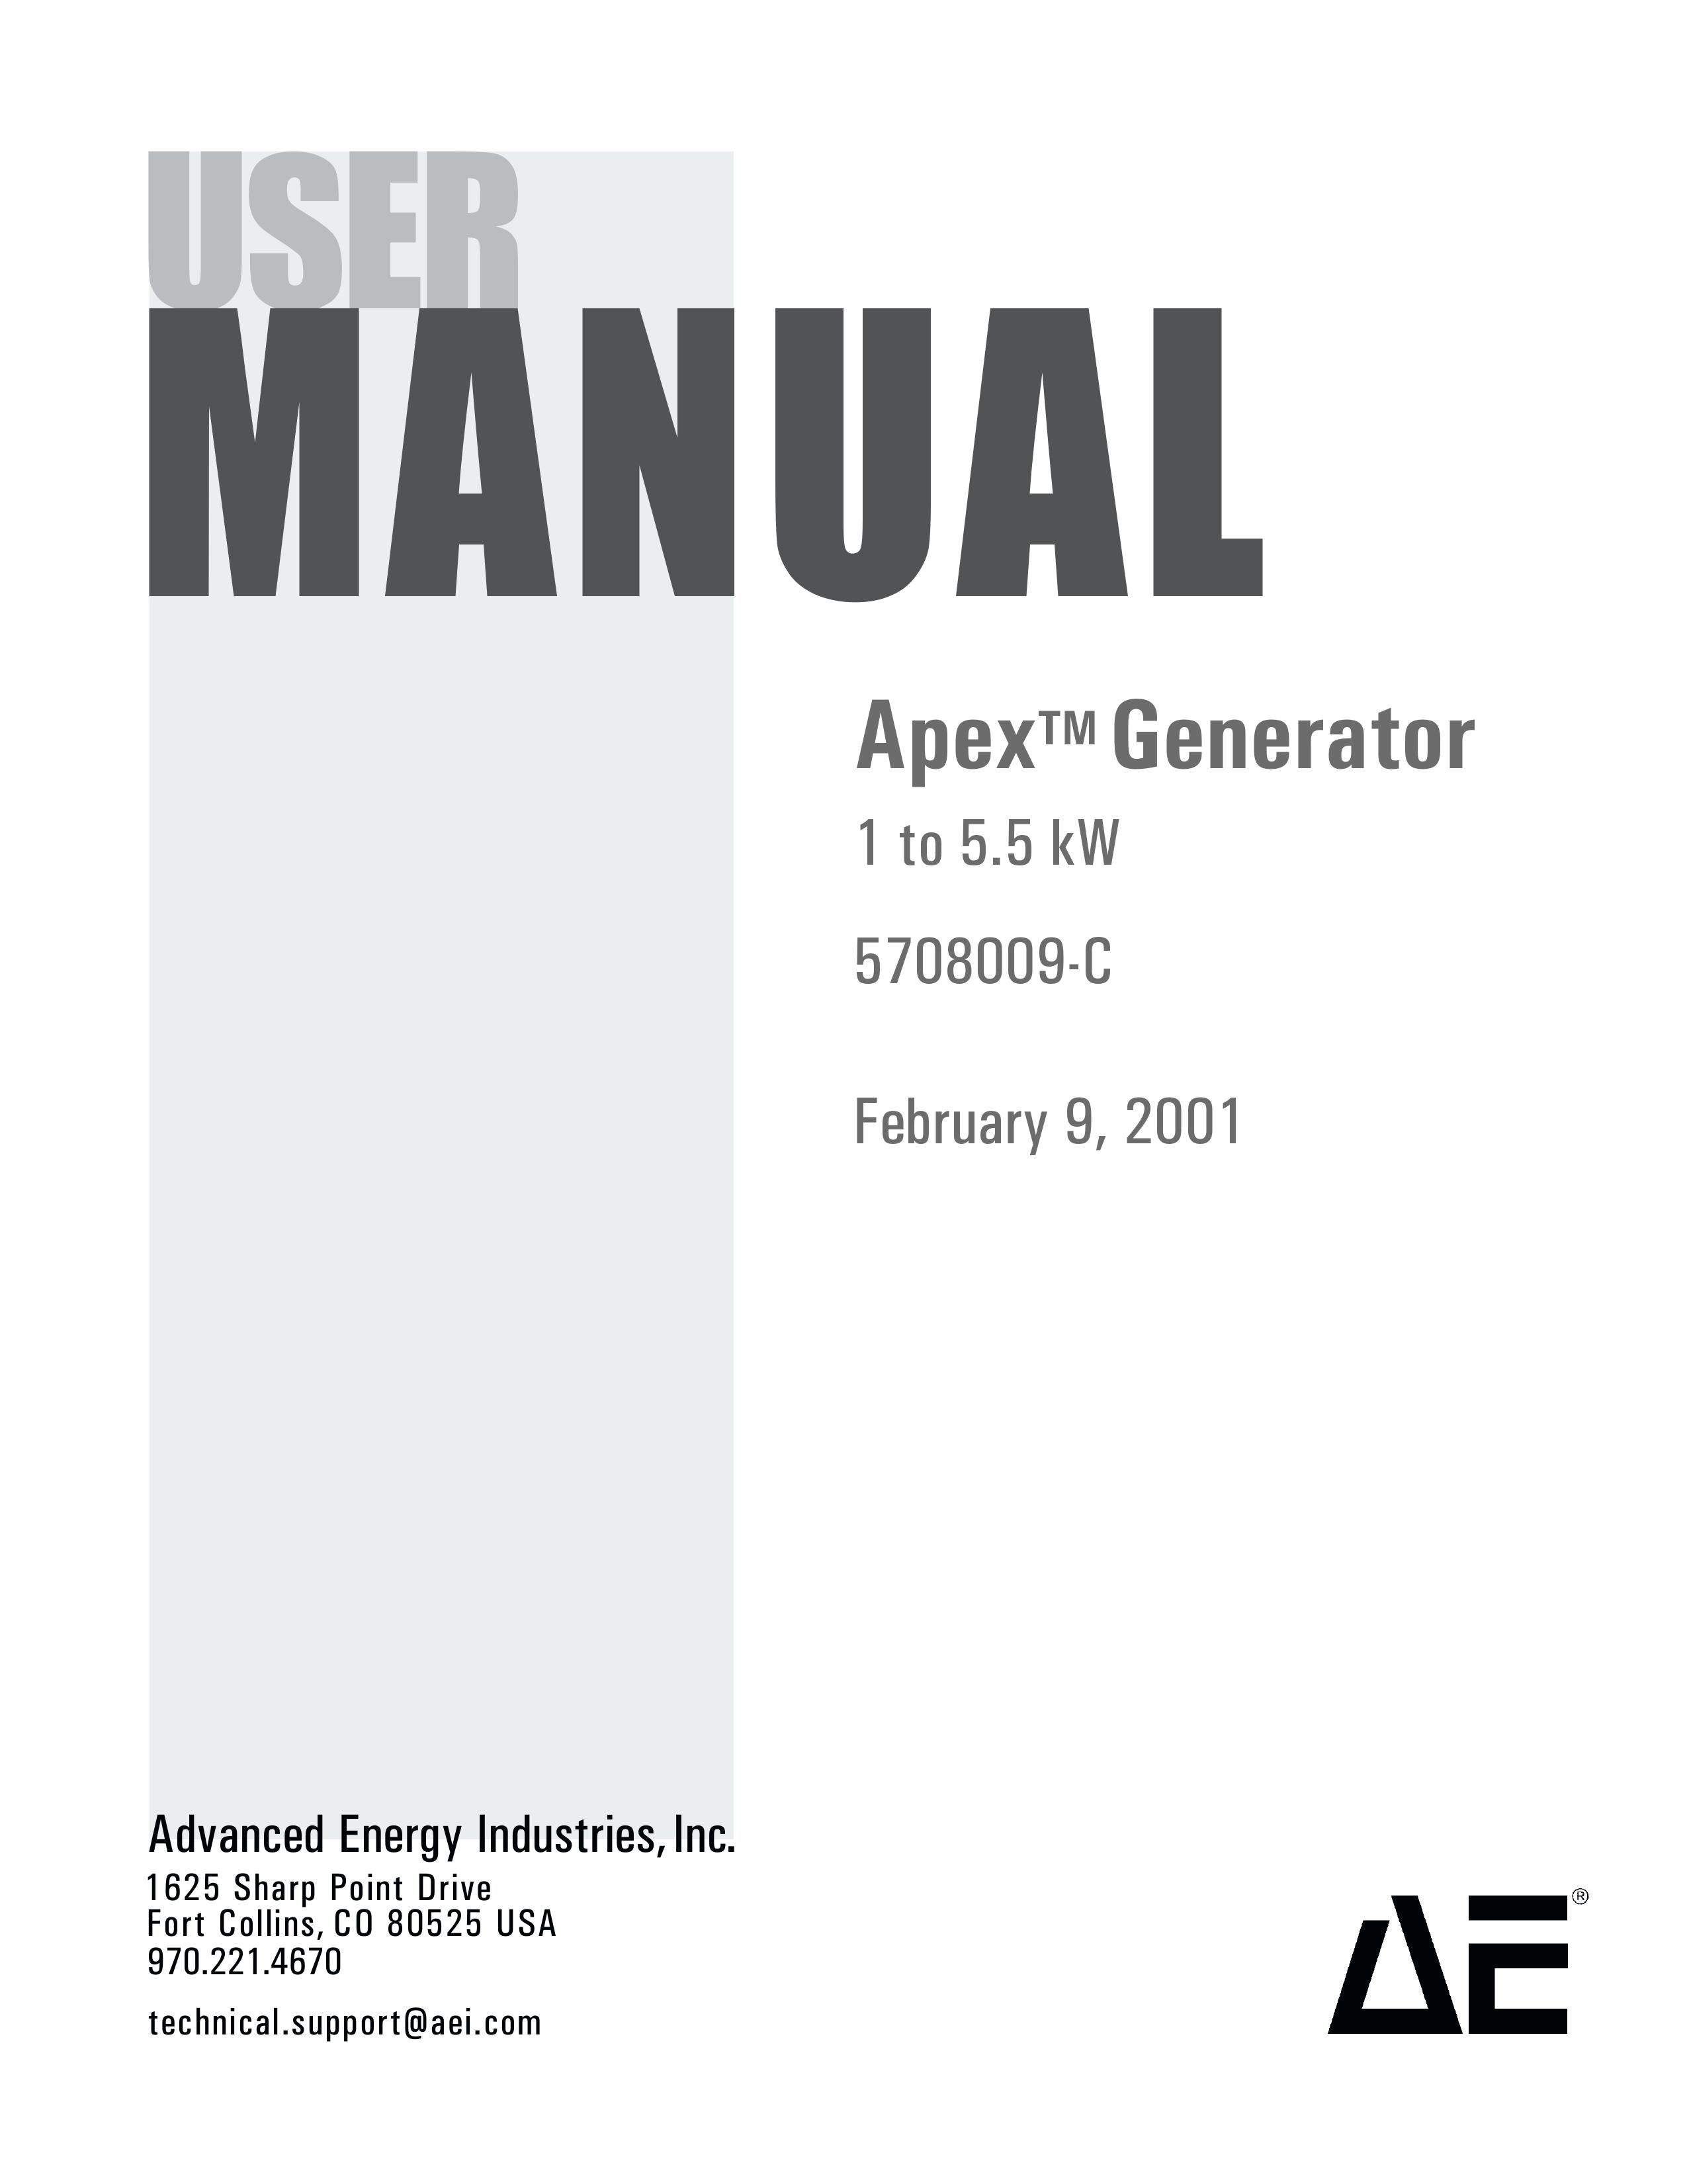 Apex Digital 5708009-C Portable Generator User Manual